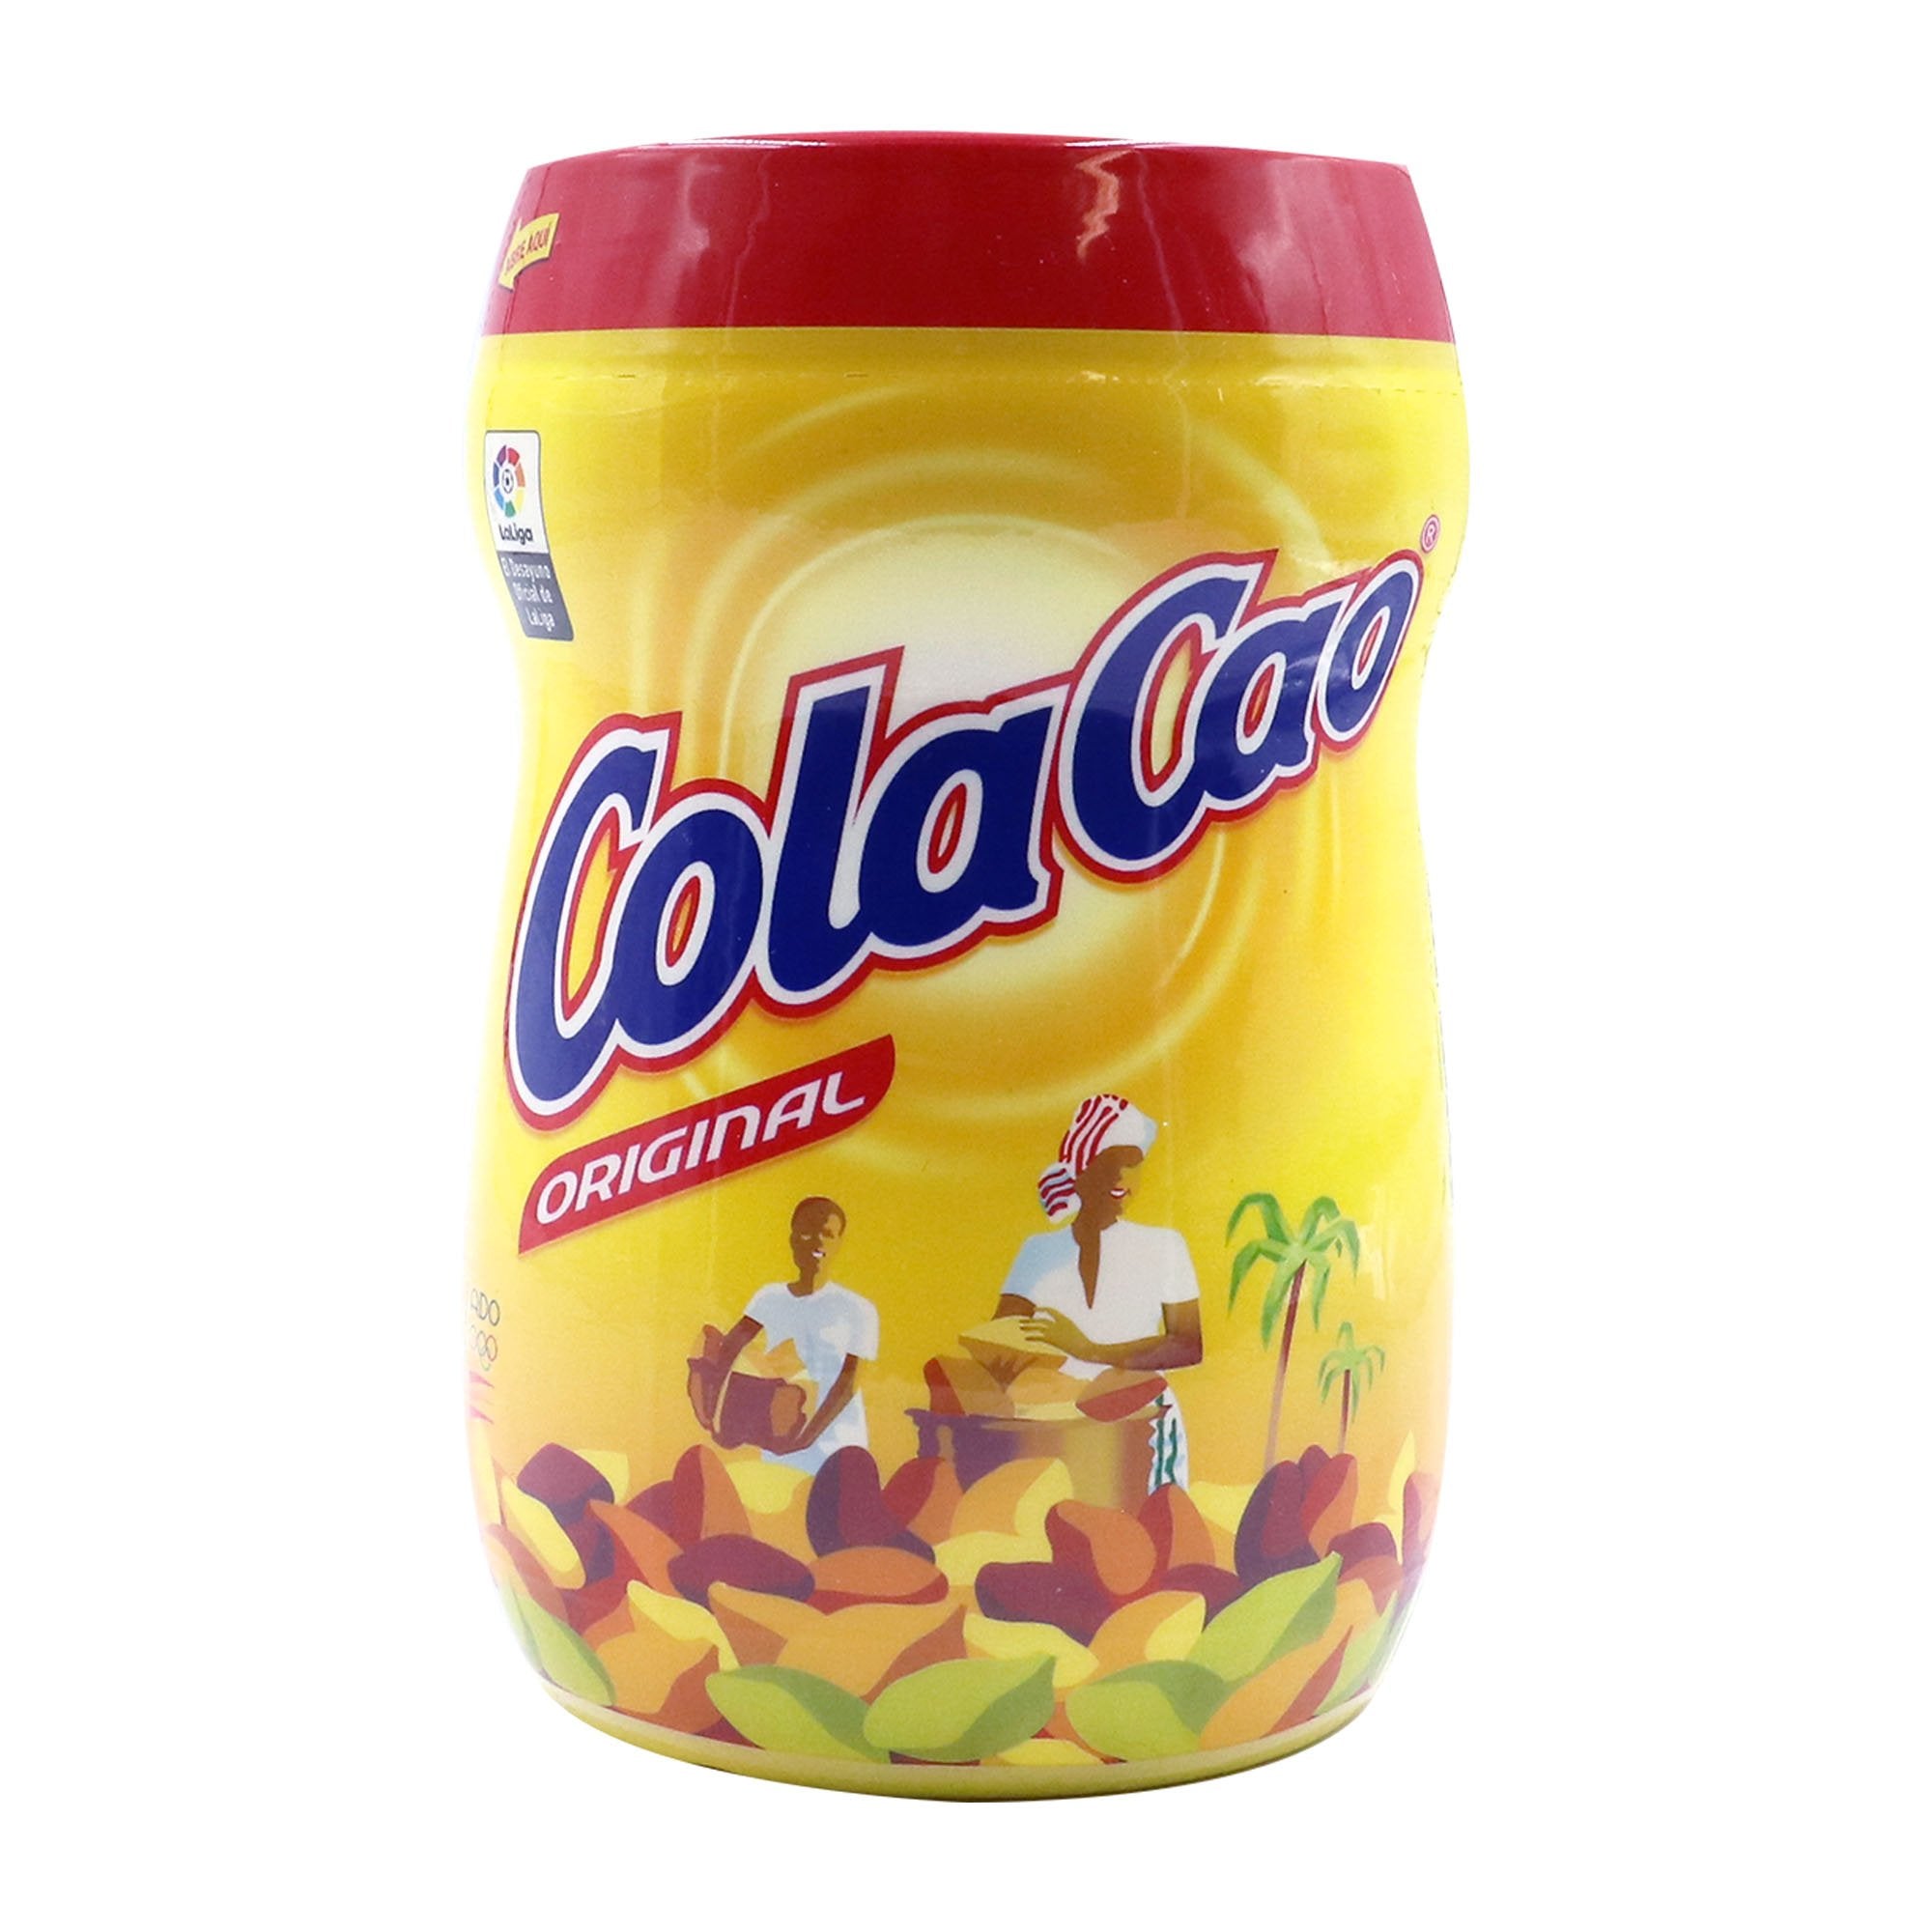 Commander Cacao Cola Cao Original (1,2 kg) Cacao Cola Cao Original